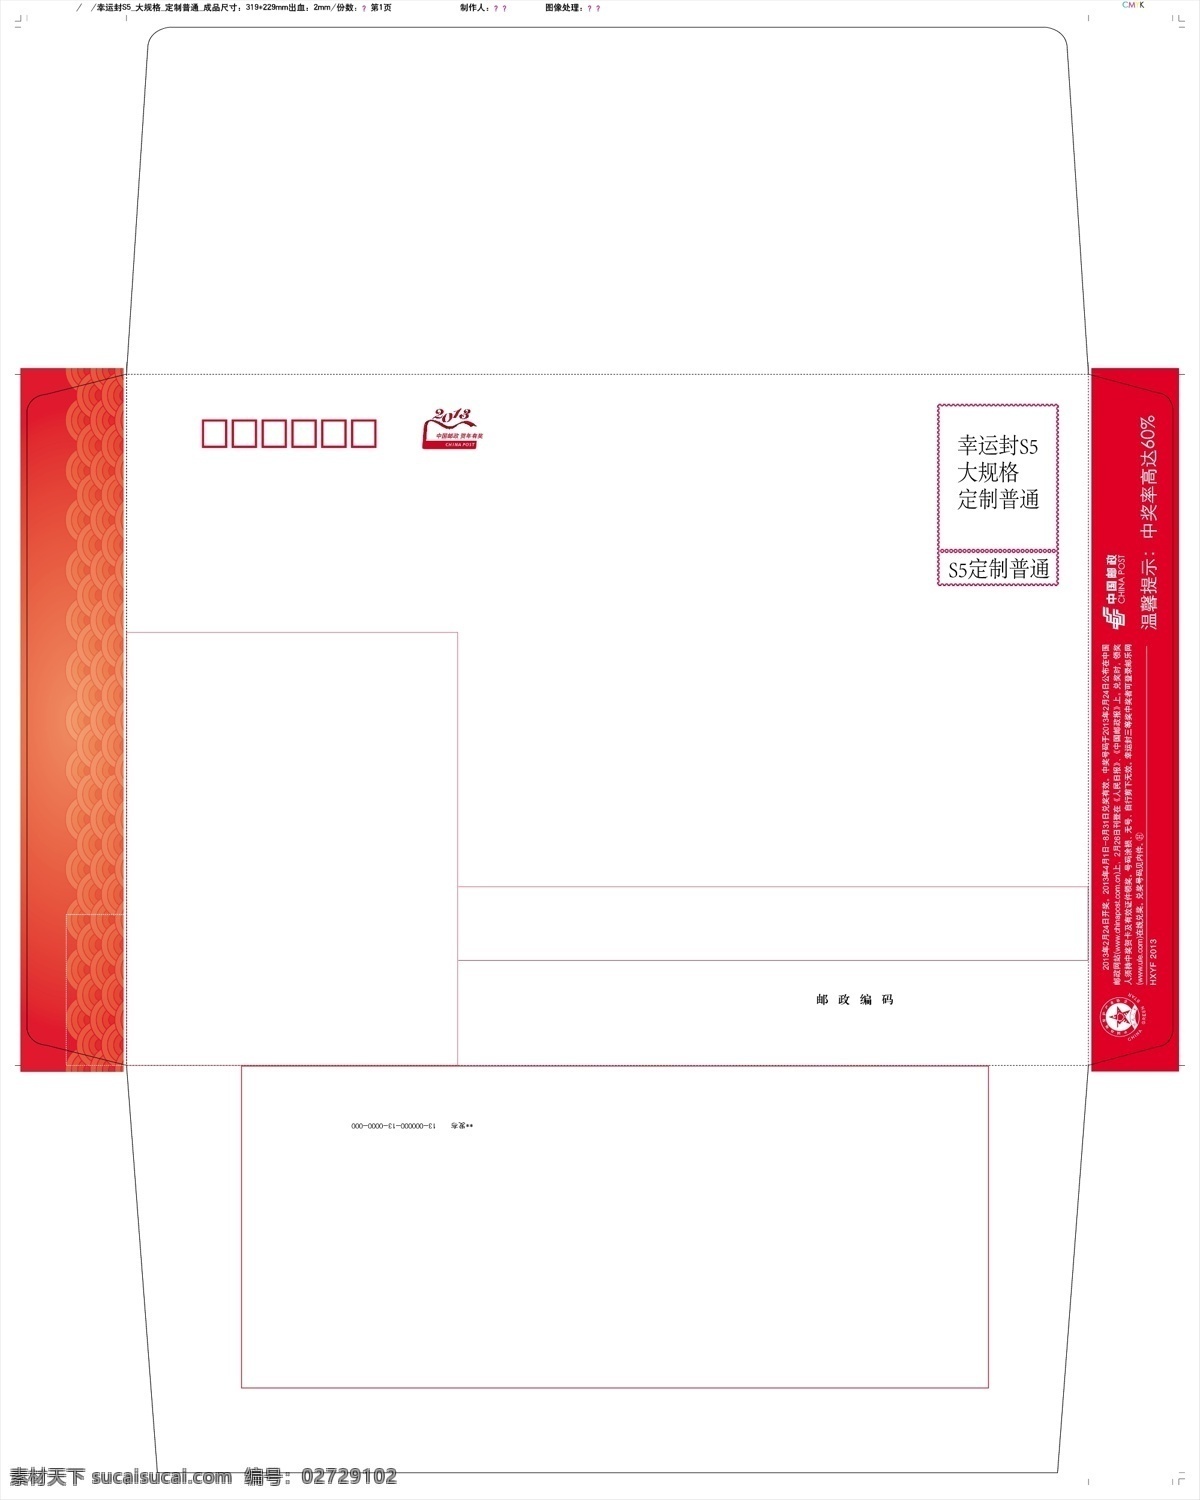 eps格式 信封模板 2013 年 模板 河南印厂 幸运 封 版式 s5 大 规格 定制 打样 矢量 矢量图